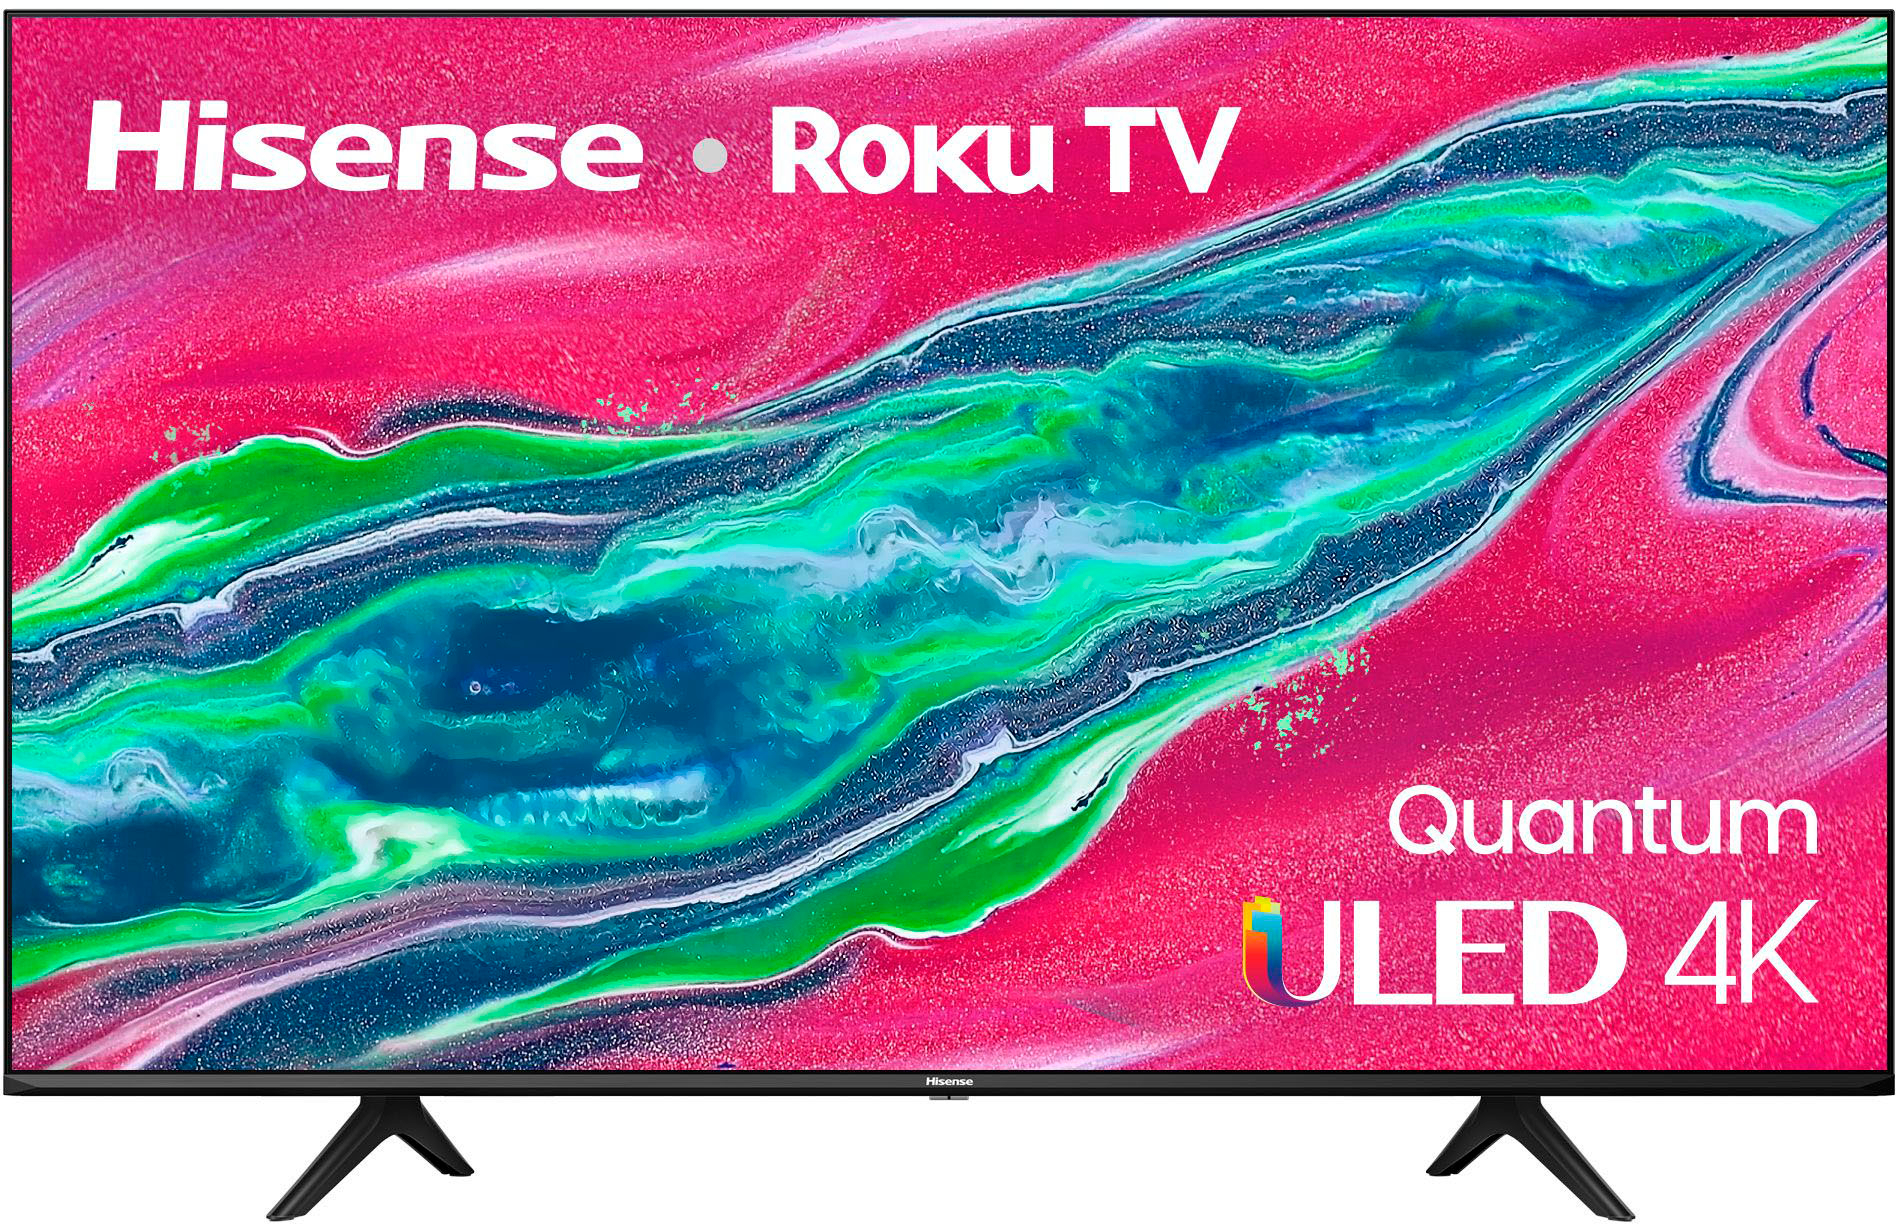 55" Hisense 55U6GR5 4K ULED Quantum Smart Roku TV $400